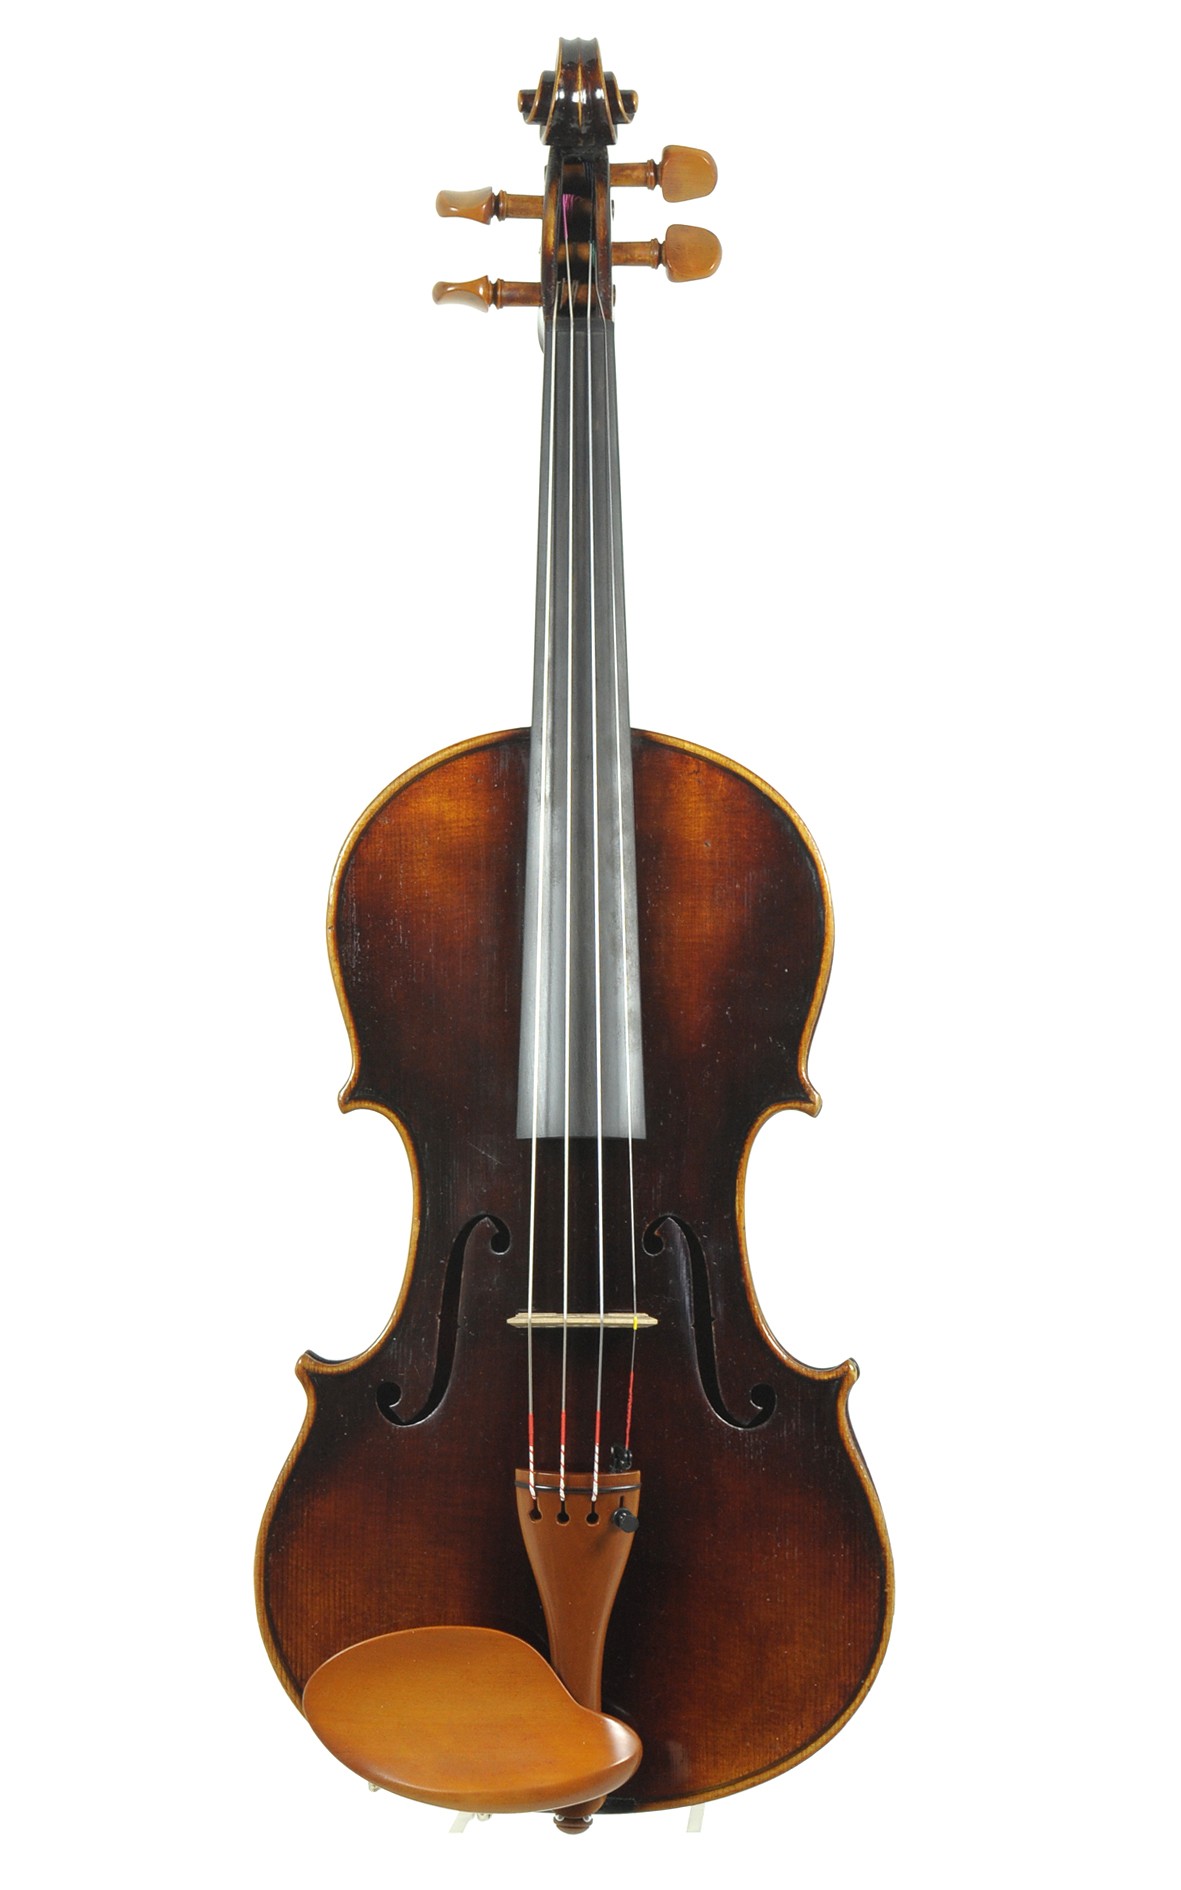 Armin Voigt violin, Markneukirchen, about 1930 - top